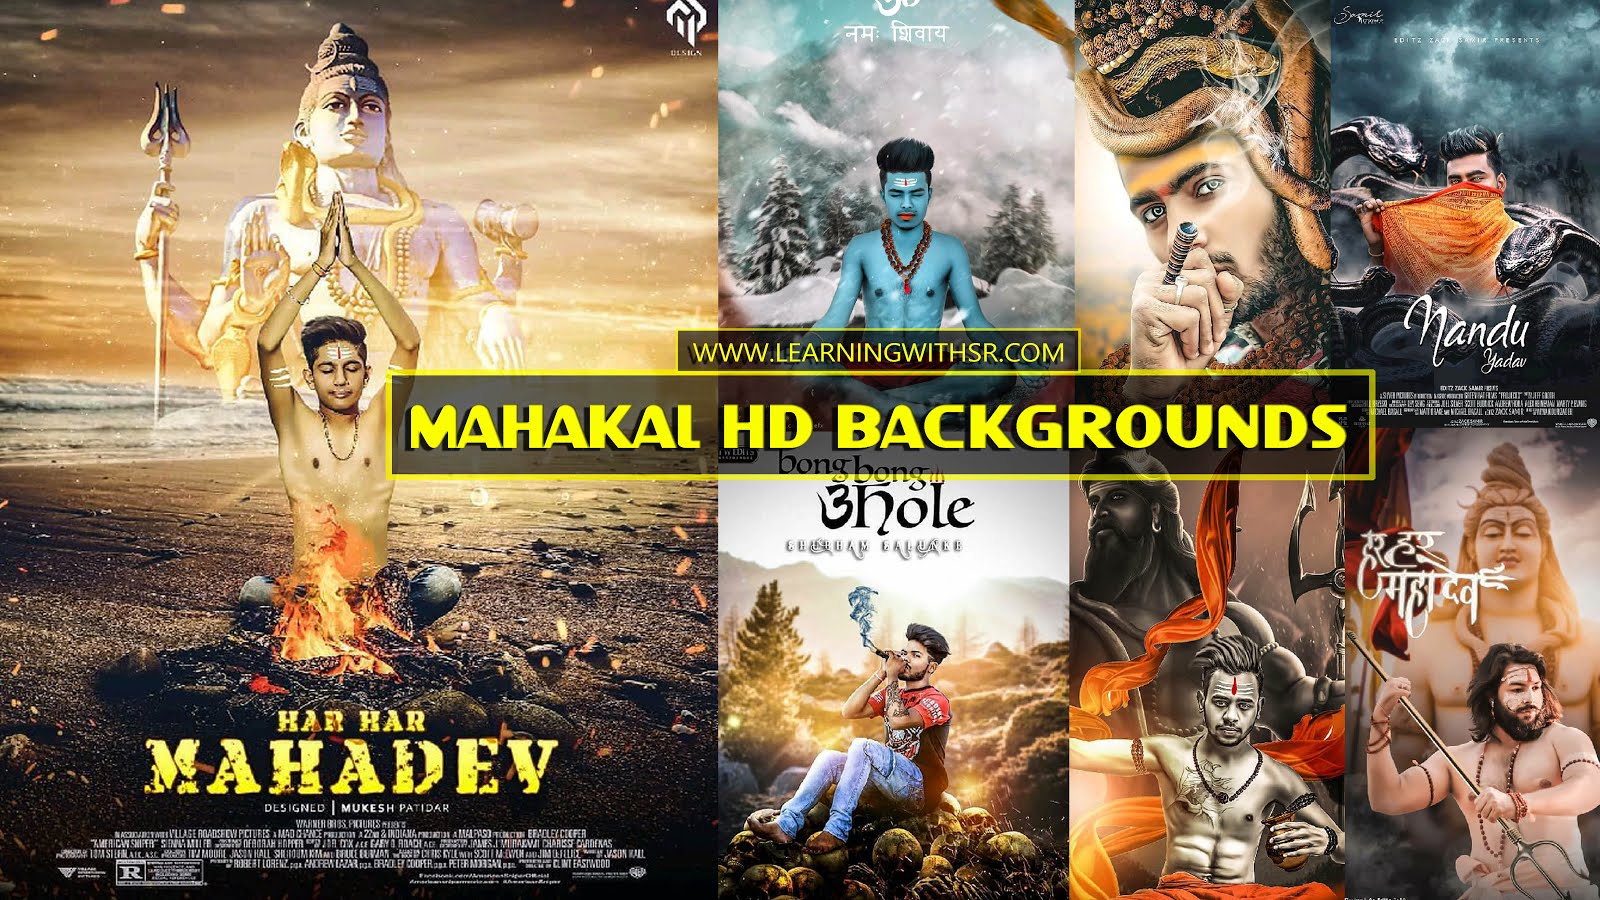 Maha shivratri editing background  Mahadev editing background  MAHAKAL  BACKGROUNDS